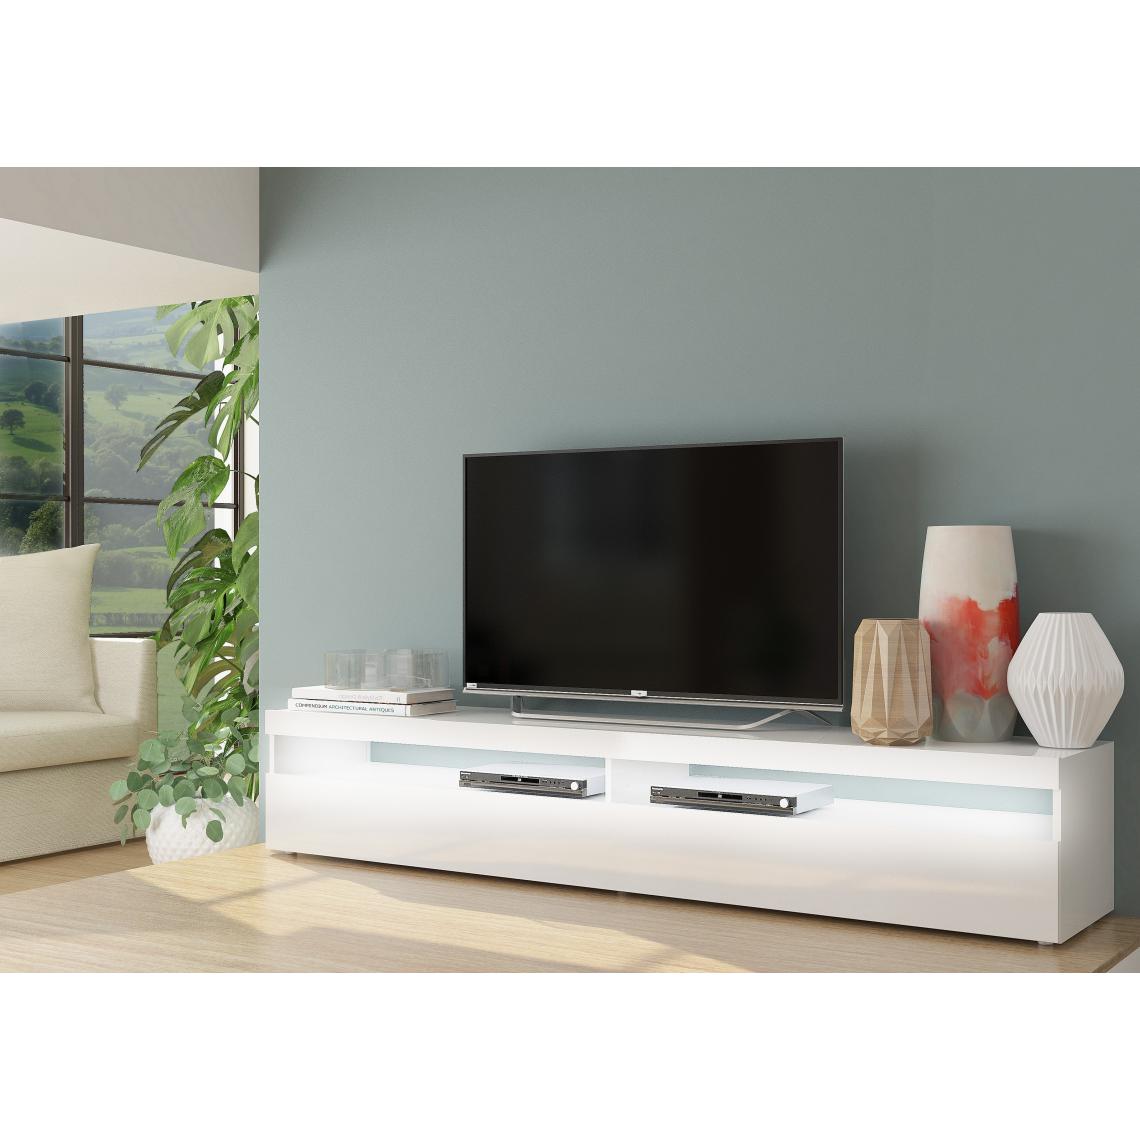 Alter - Meuble de salon Meuble TV, Made in Italy, Meuble TV avec 1 porte abattante et étagères, cm 200x45h36, couleur blanc brillant, avec lumière LED blanche - Meubles TV, Hi-Fi